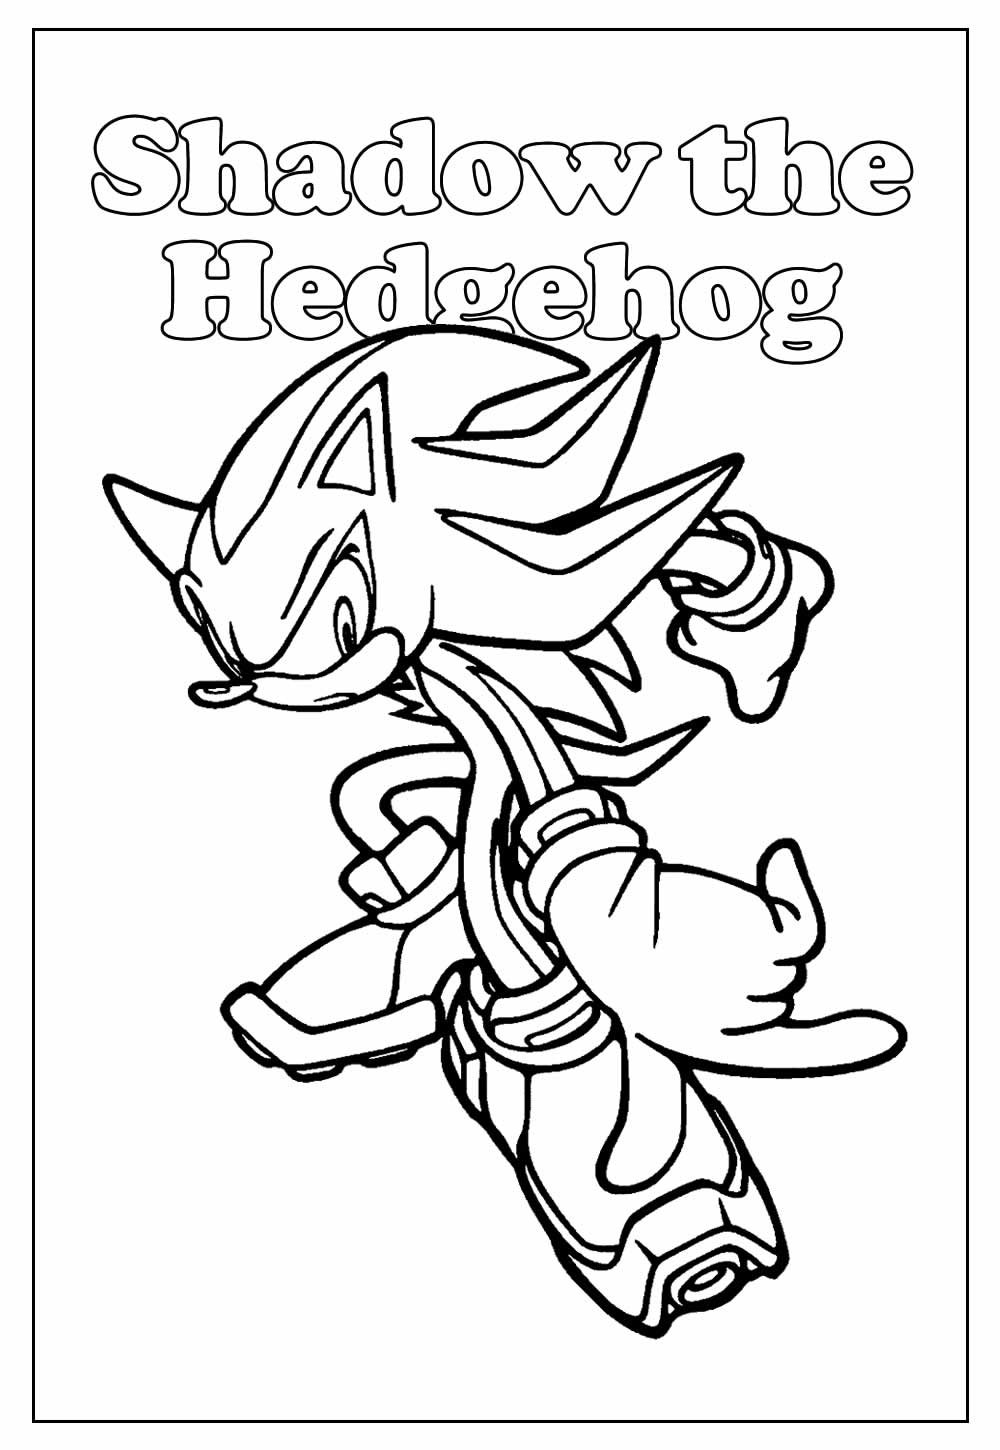 Desenho Educativo de Shadow the Hedgehog para colorir